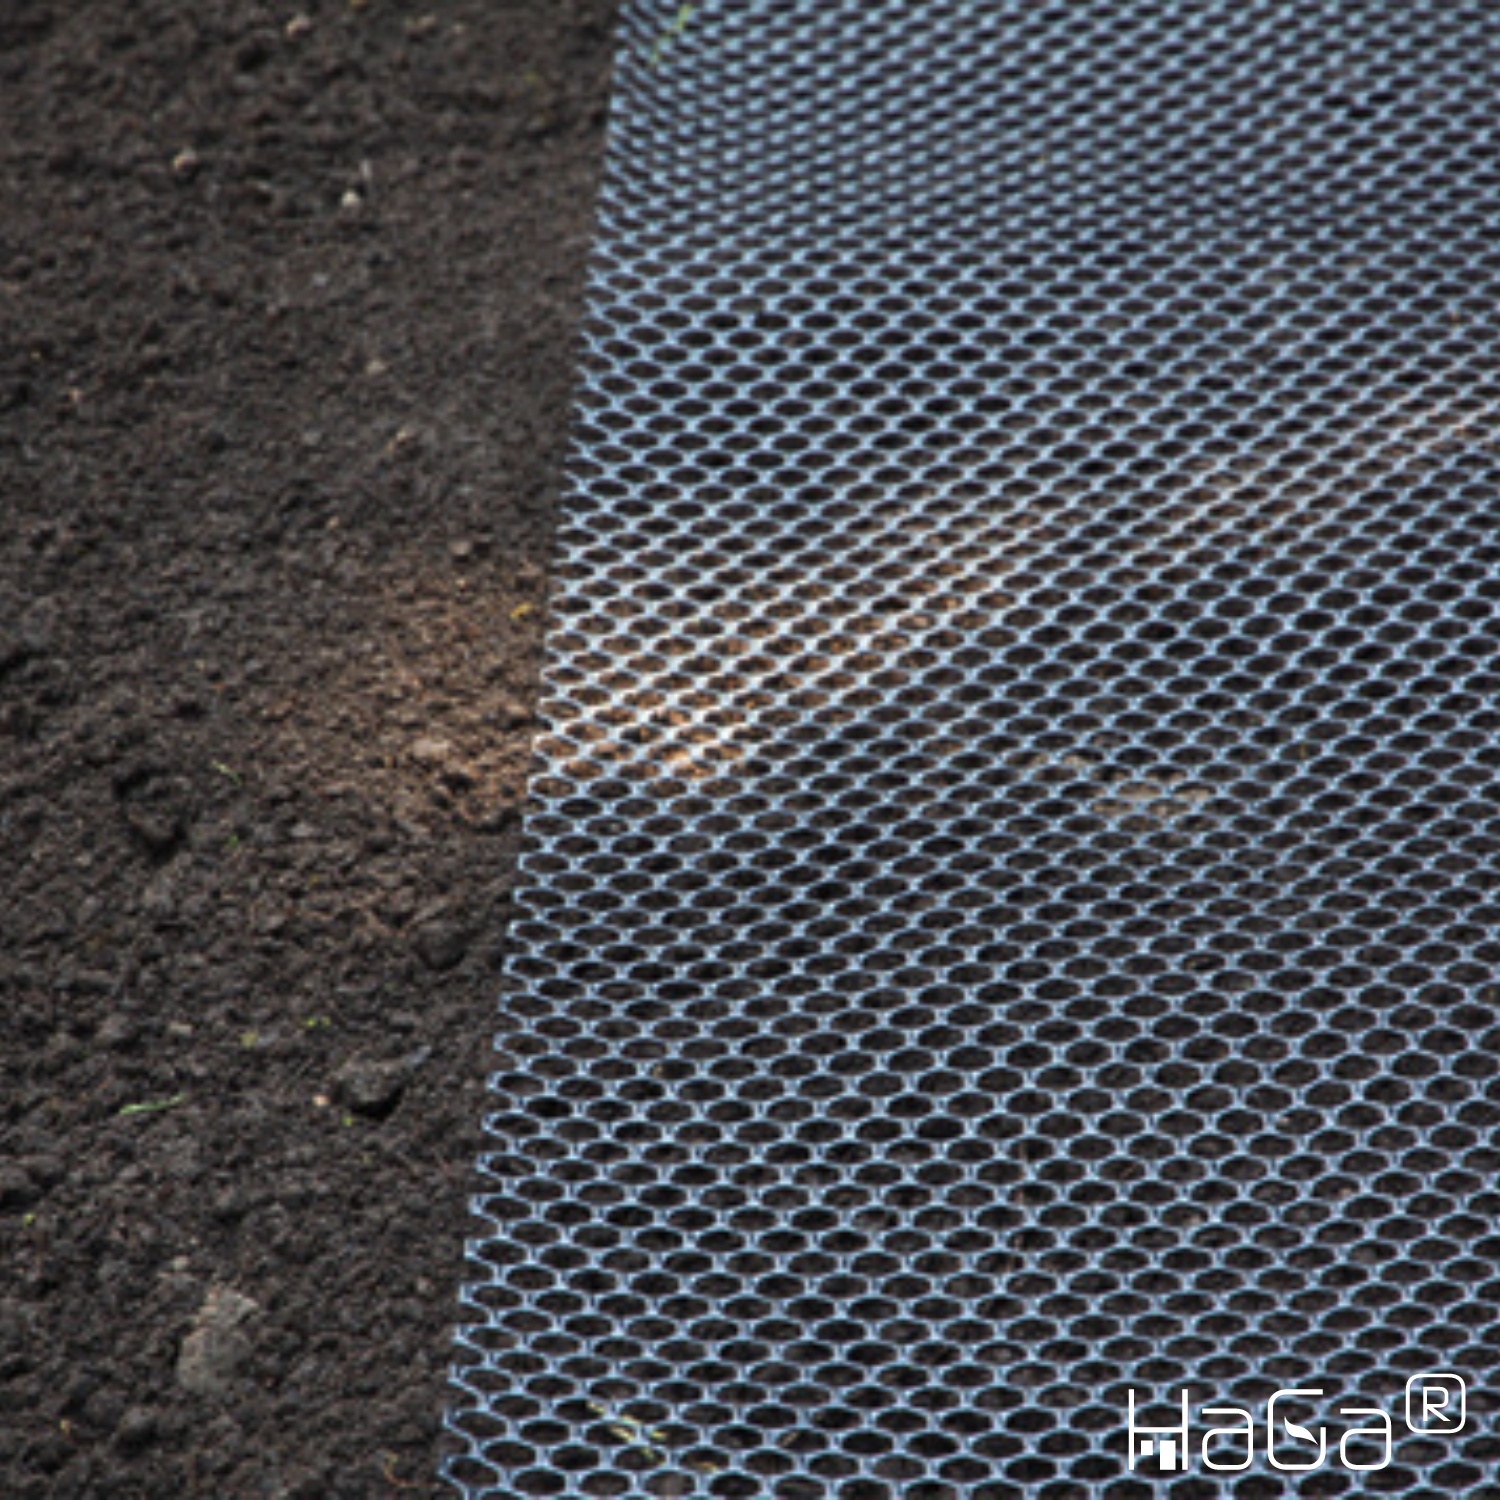 MAULWURFGITTER in 0,6m Breite (Meterware) f. Rasen als Maulwurfschutz schwarz